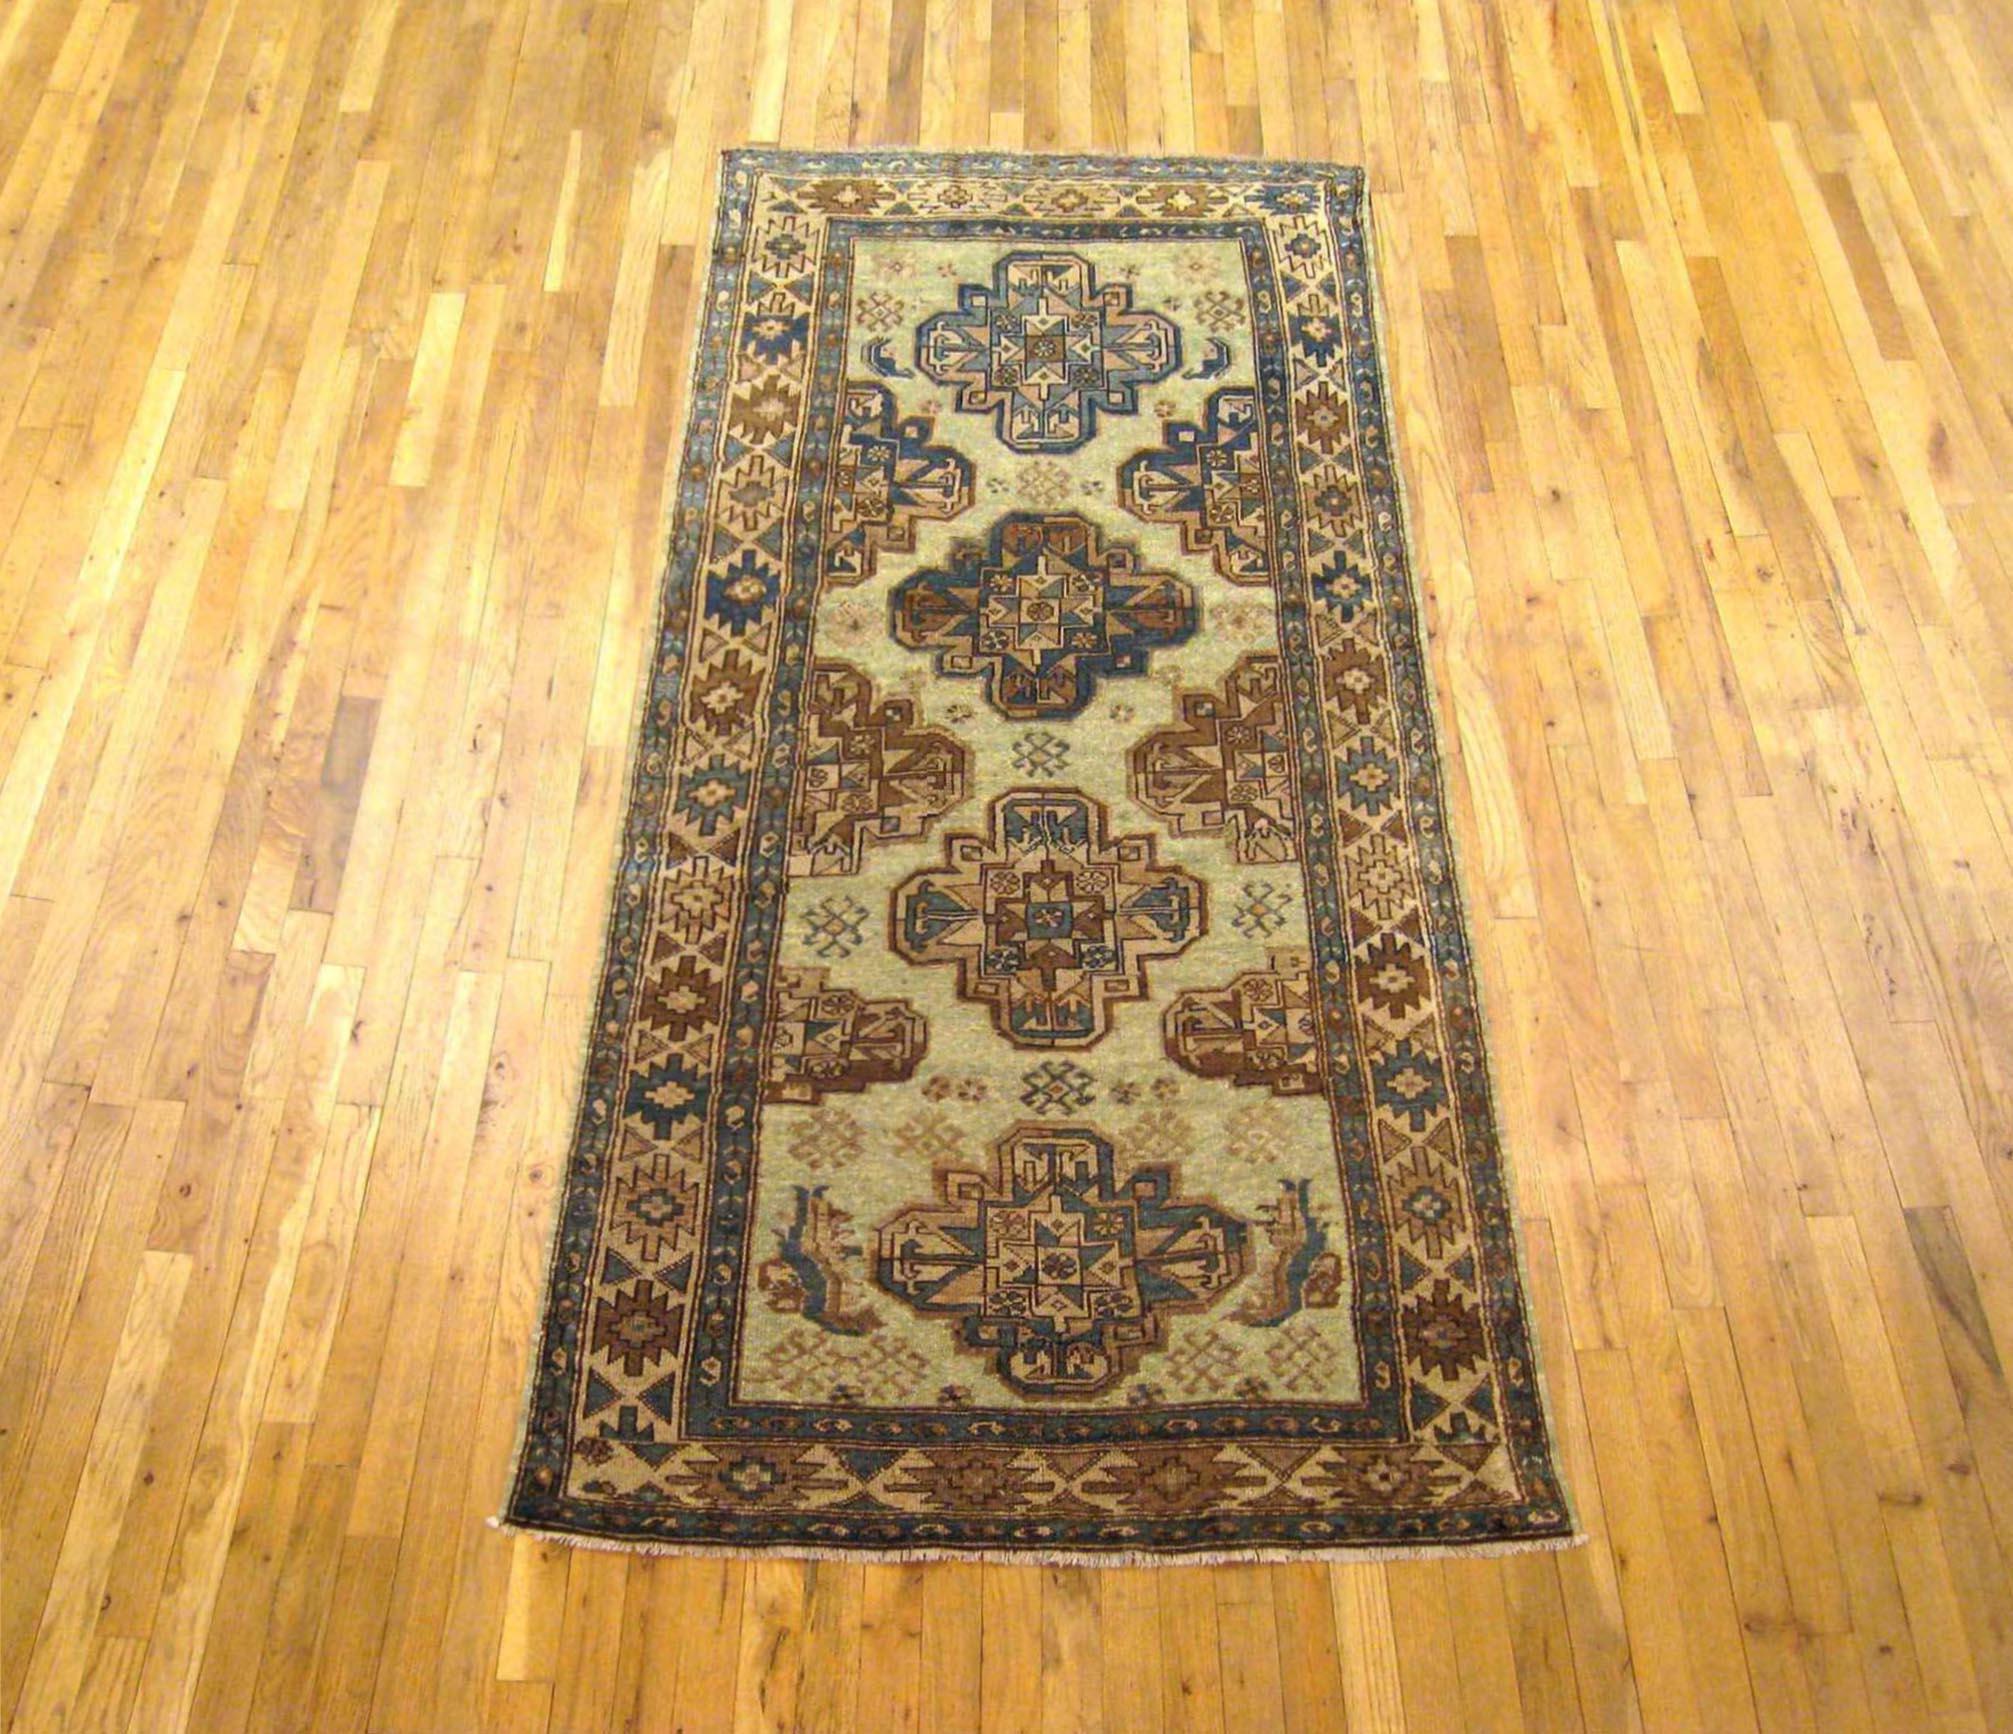 Antiker persischer Malayer Orientteppich in Läufergröße

Ein antiker persischer Malayer Orientteppich, um 1910. Größe 7'8